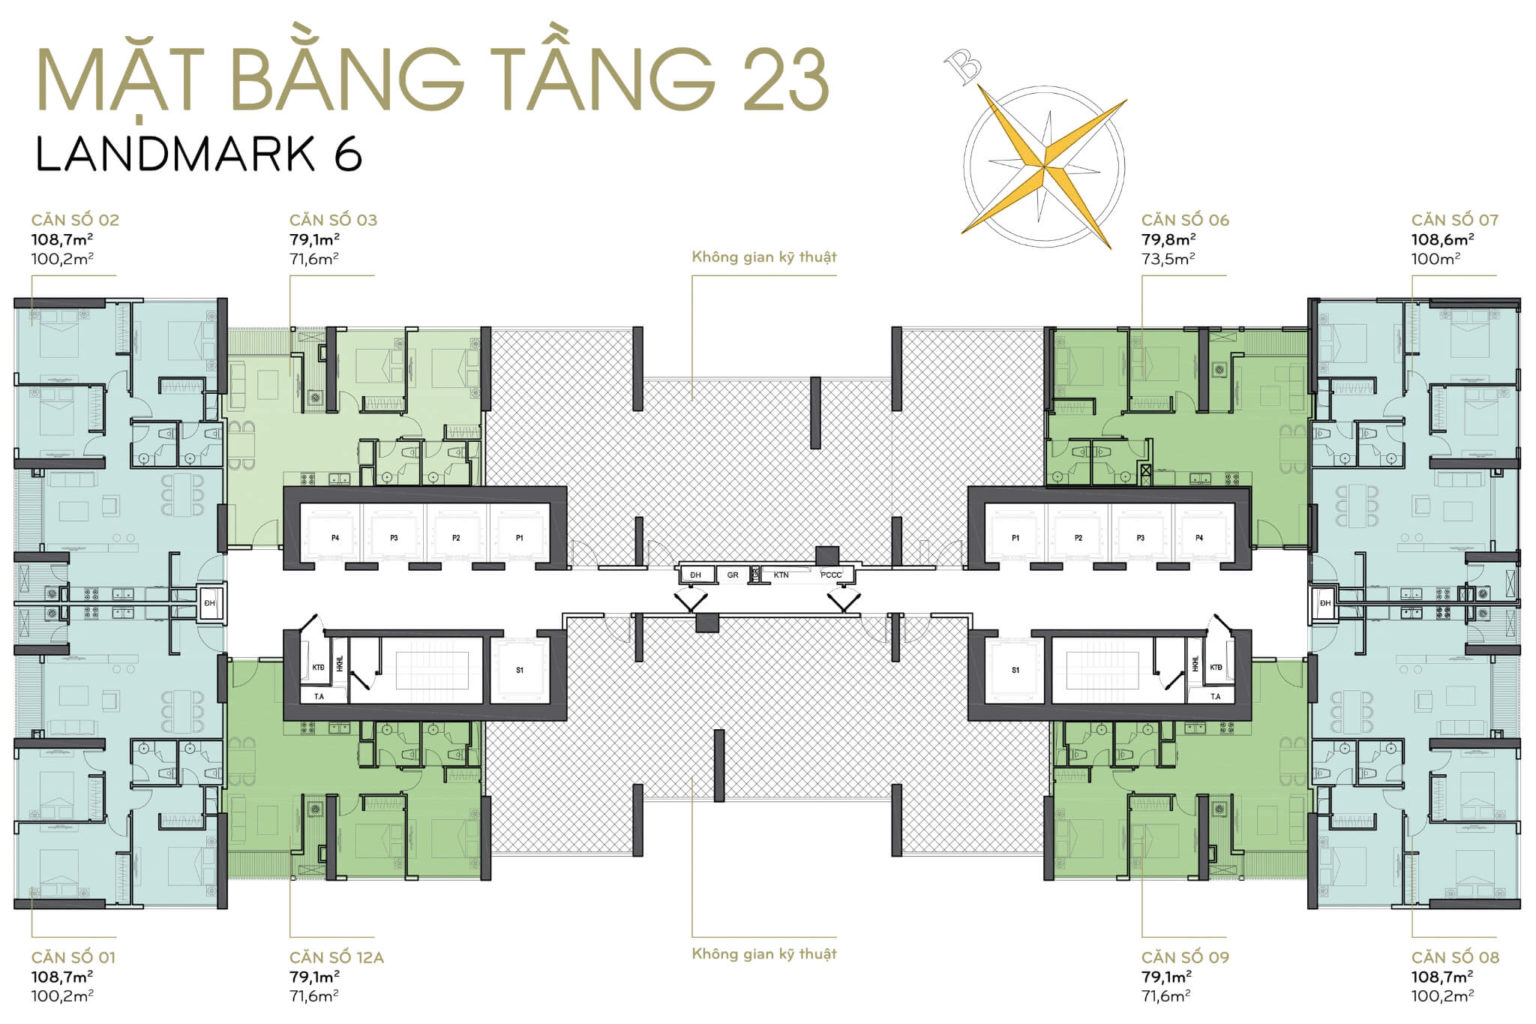 202301/02/10/101516-mat-bang-layout-landmark-6-tang-23-1536x1024.jpg